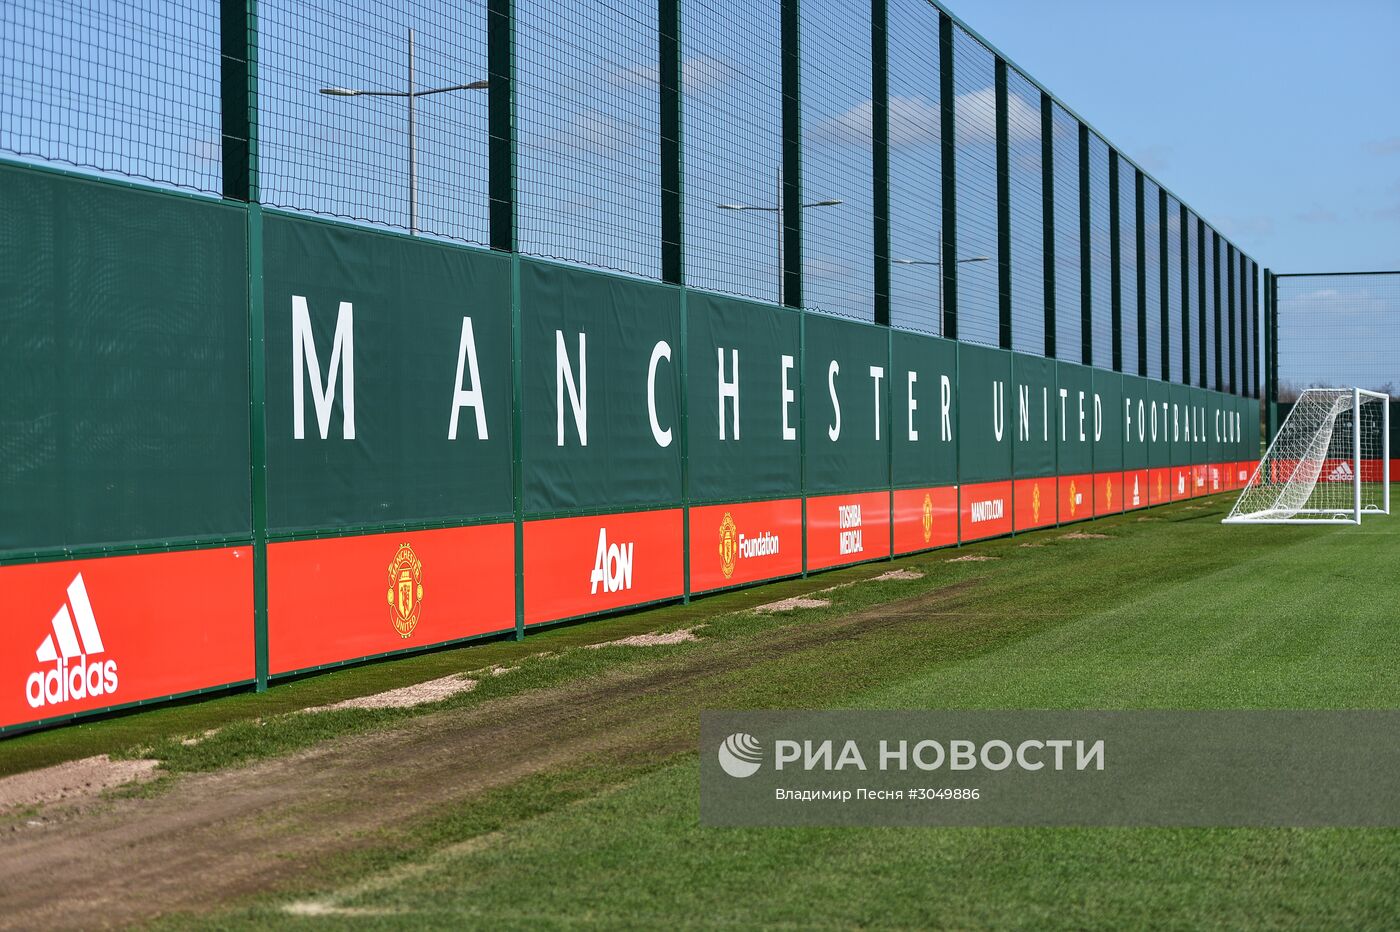 Тренировочный комплекс футбольного клуба "Манчестер Юнайтед"